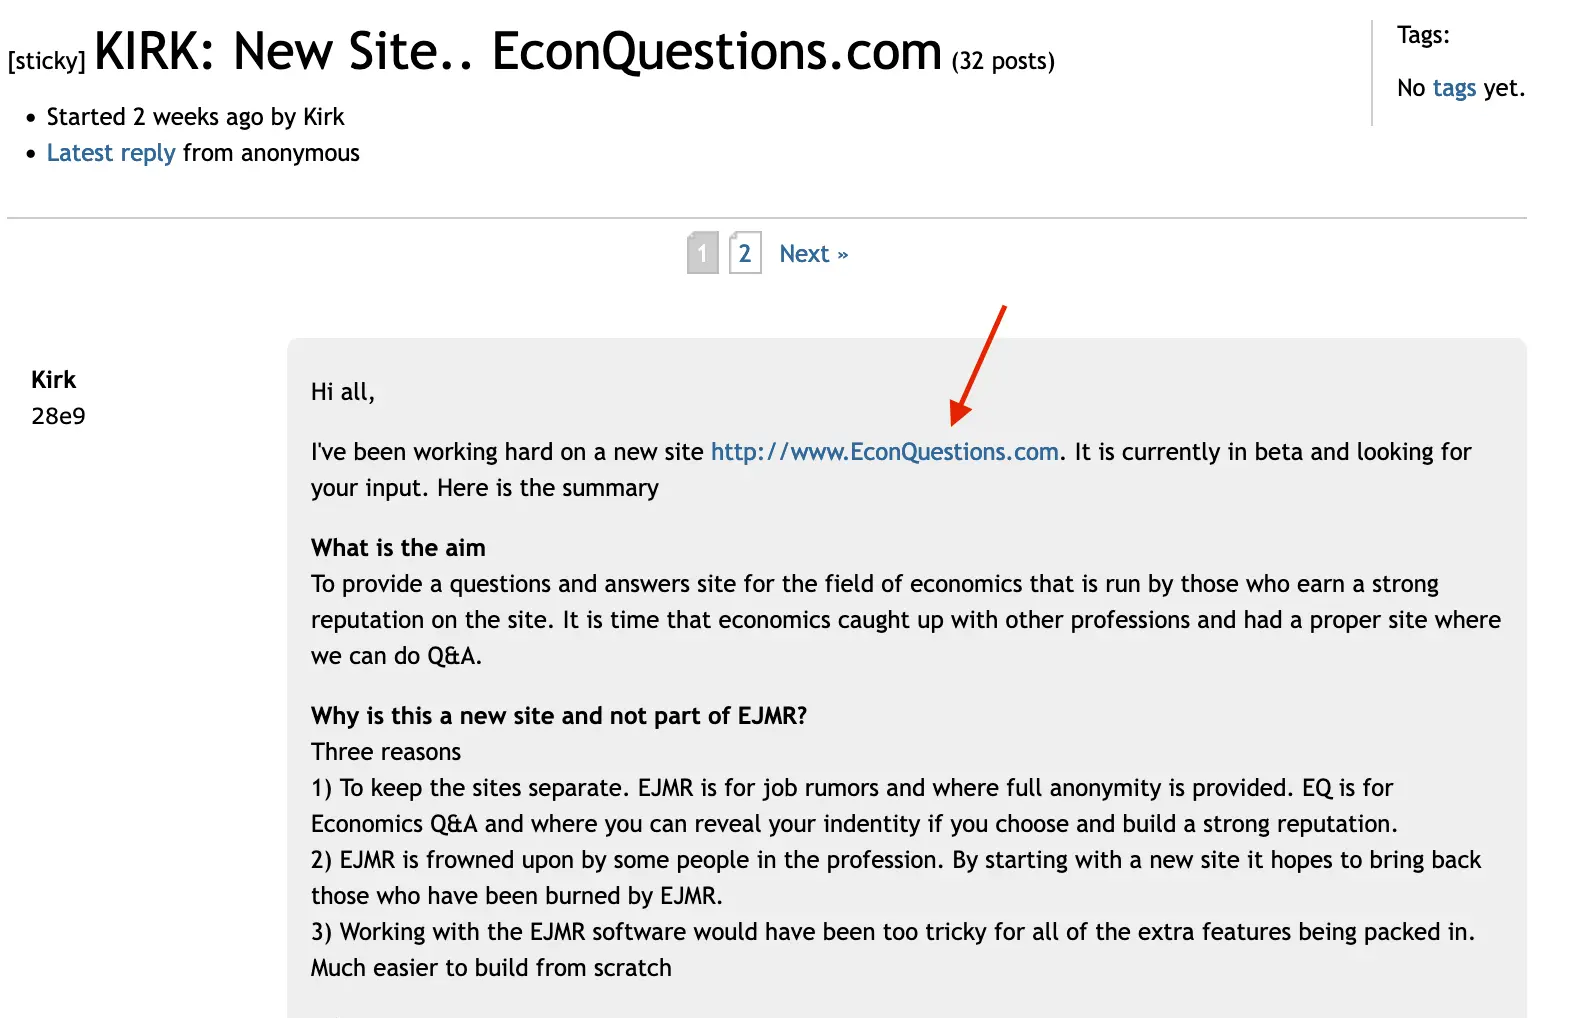 Kirk promotes EconQuestions.com